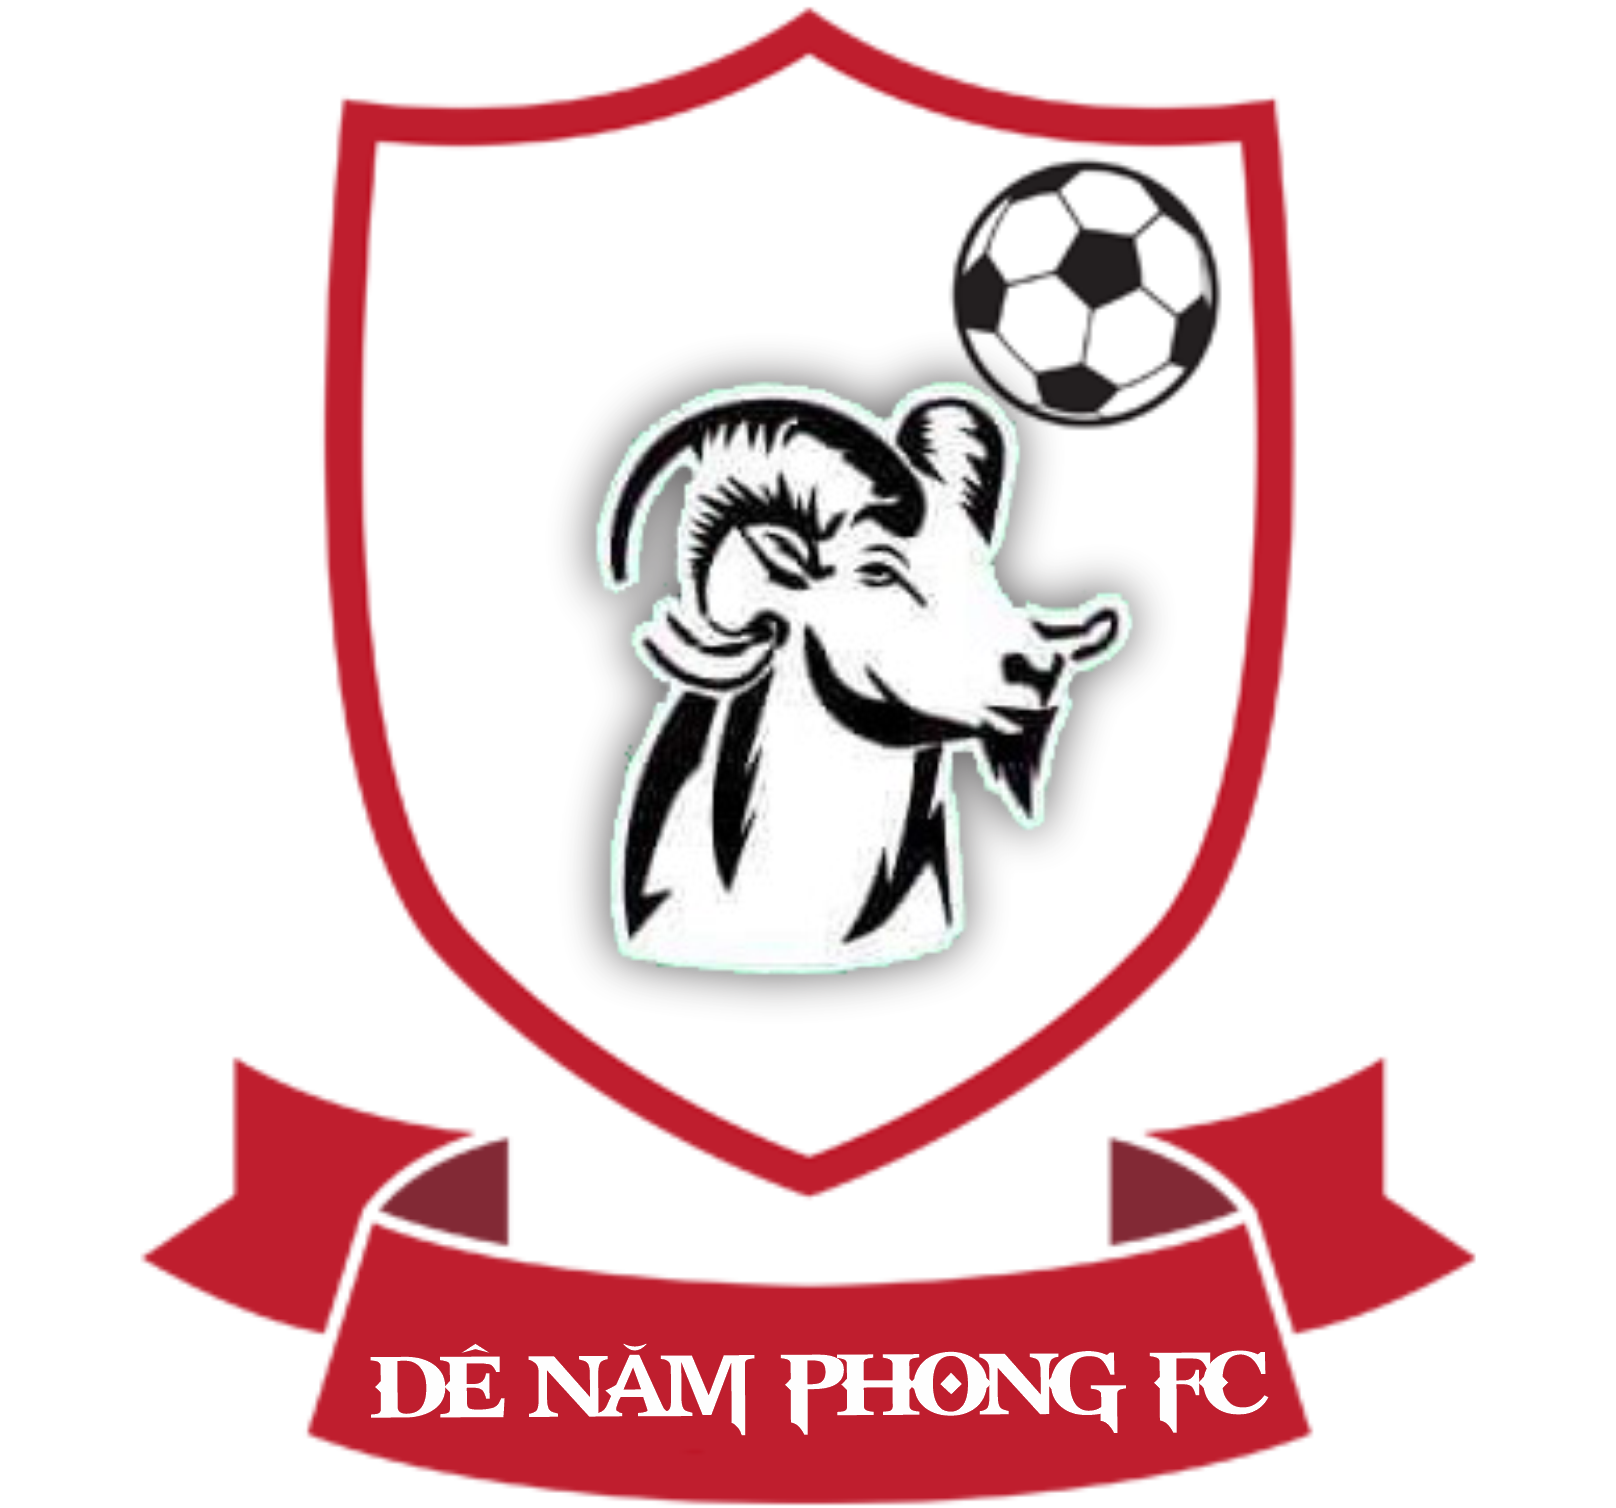 DÊ NĂM PHONG FC